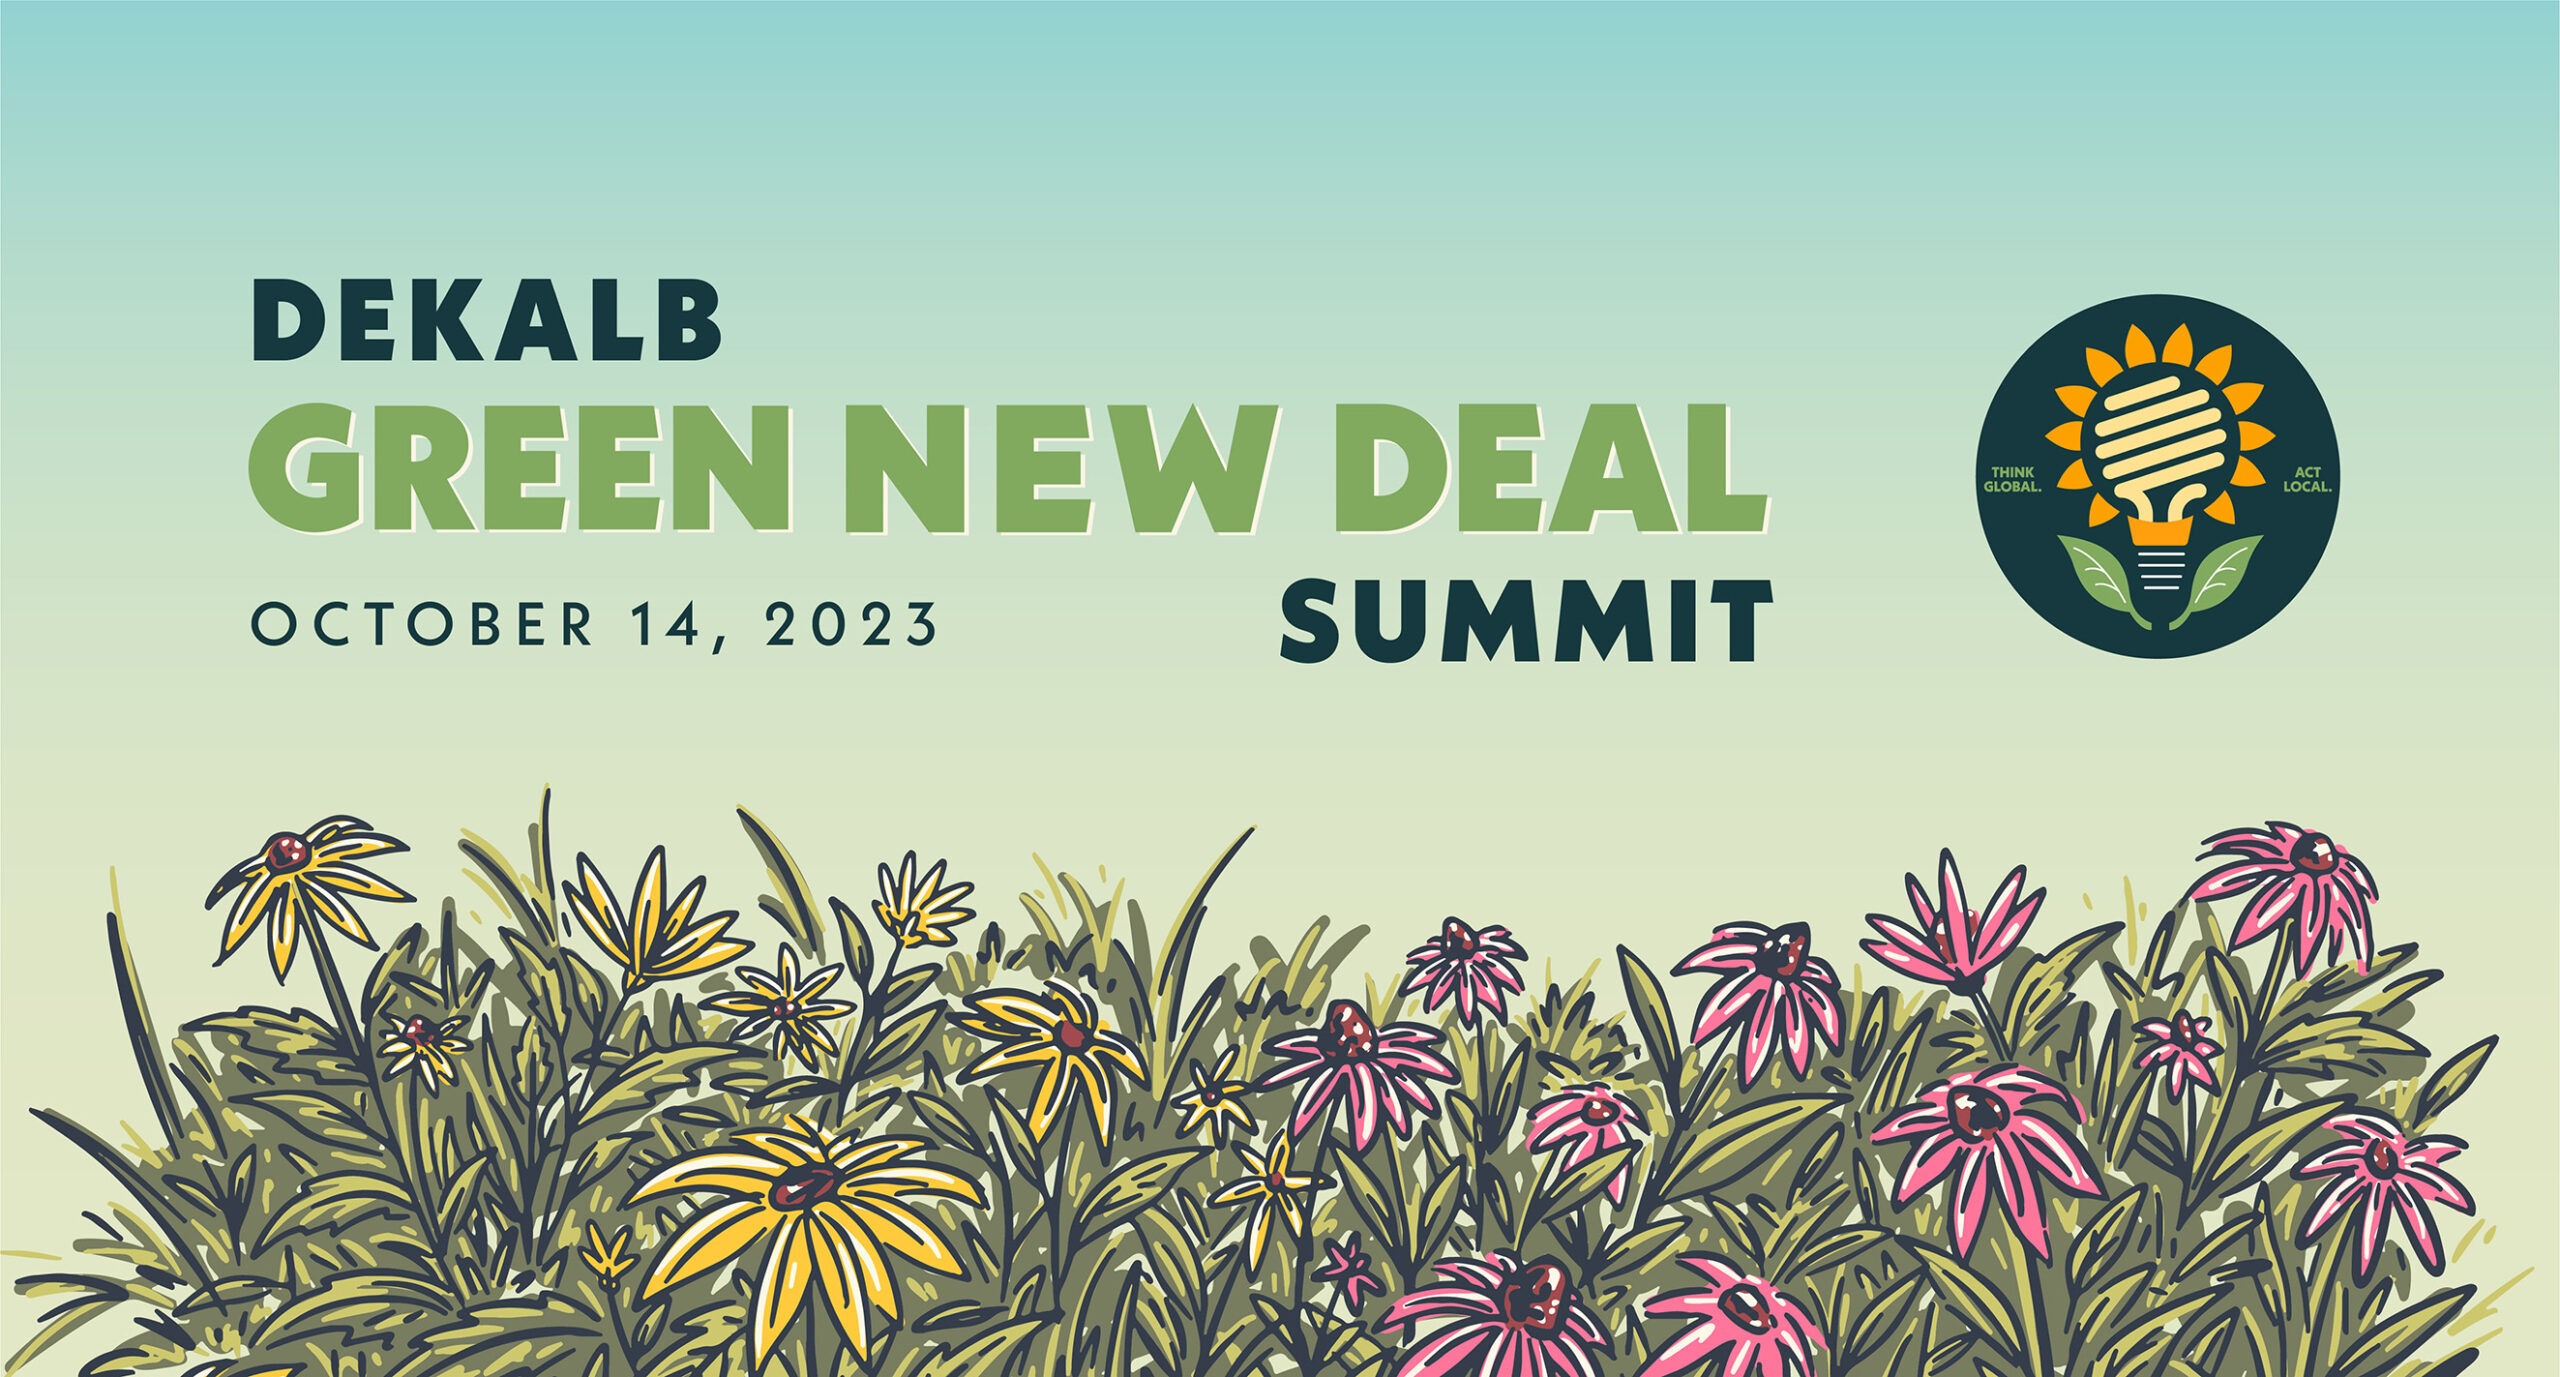 Dekalb Green New Deal Summit